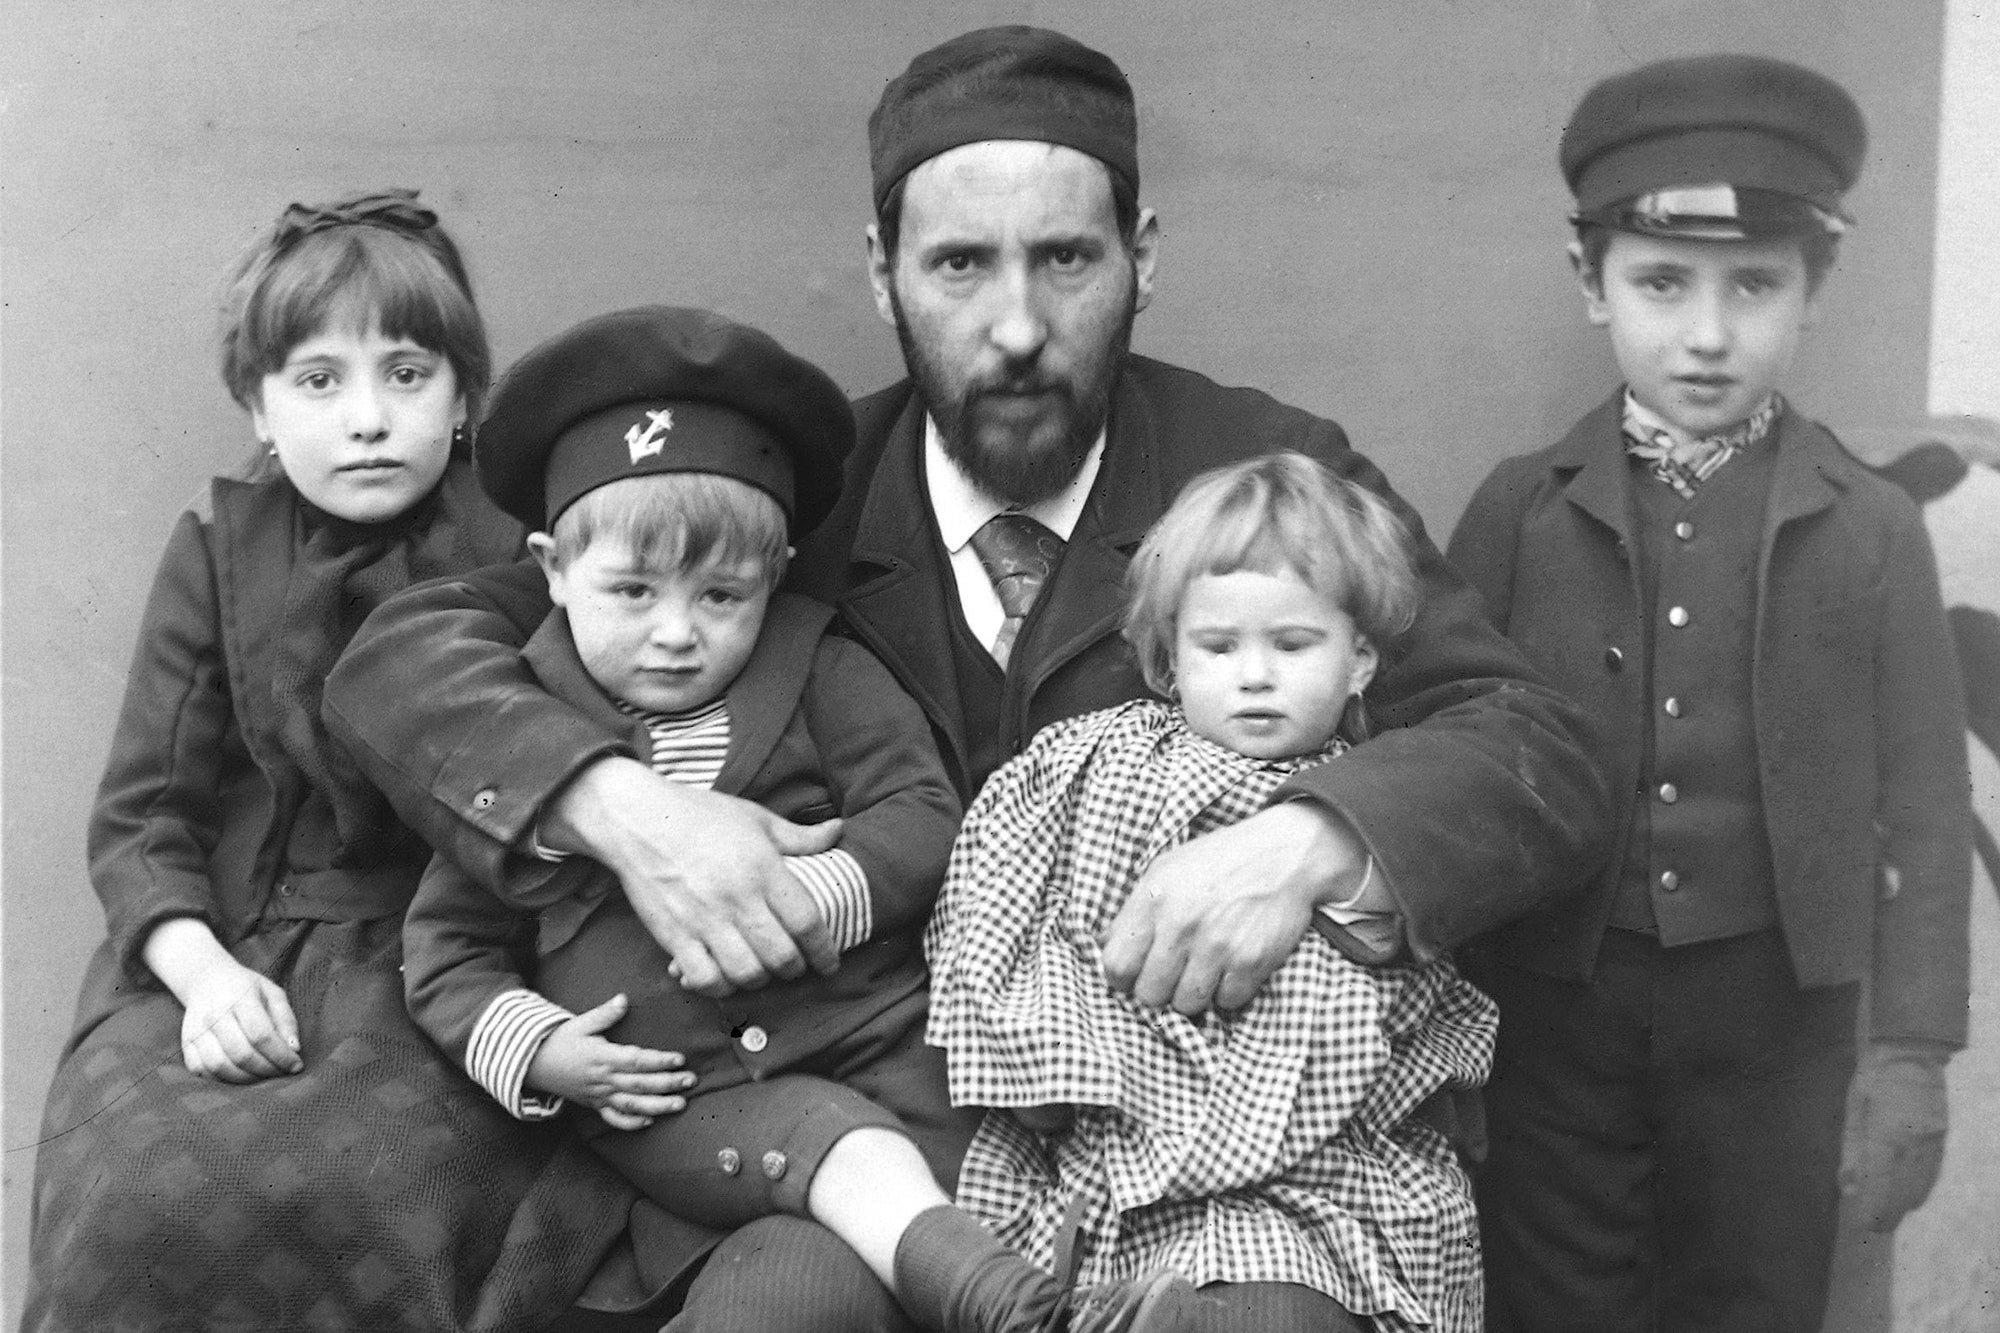 Ramón y Cajal with his children: Fe, Santiago, Jorge y Paula, in Barcelona, 1889